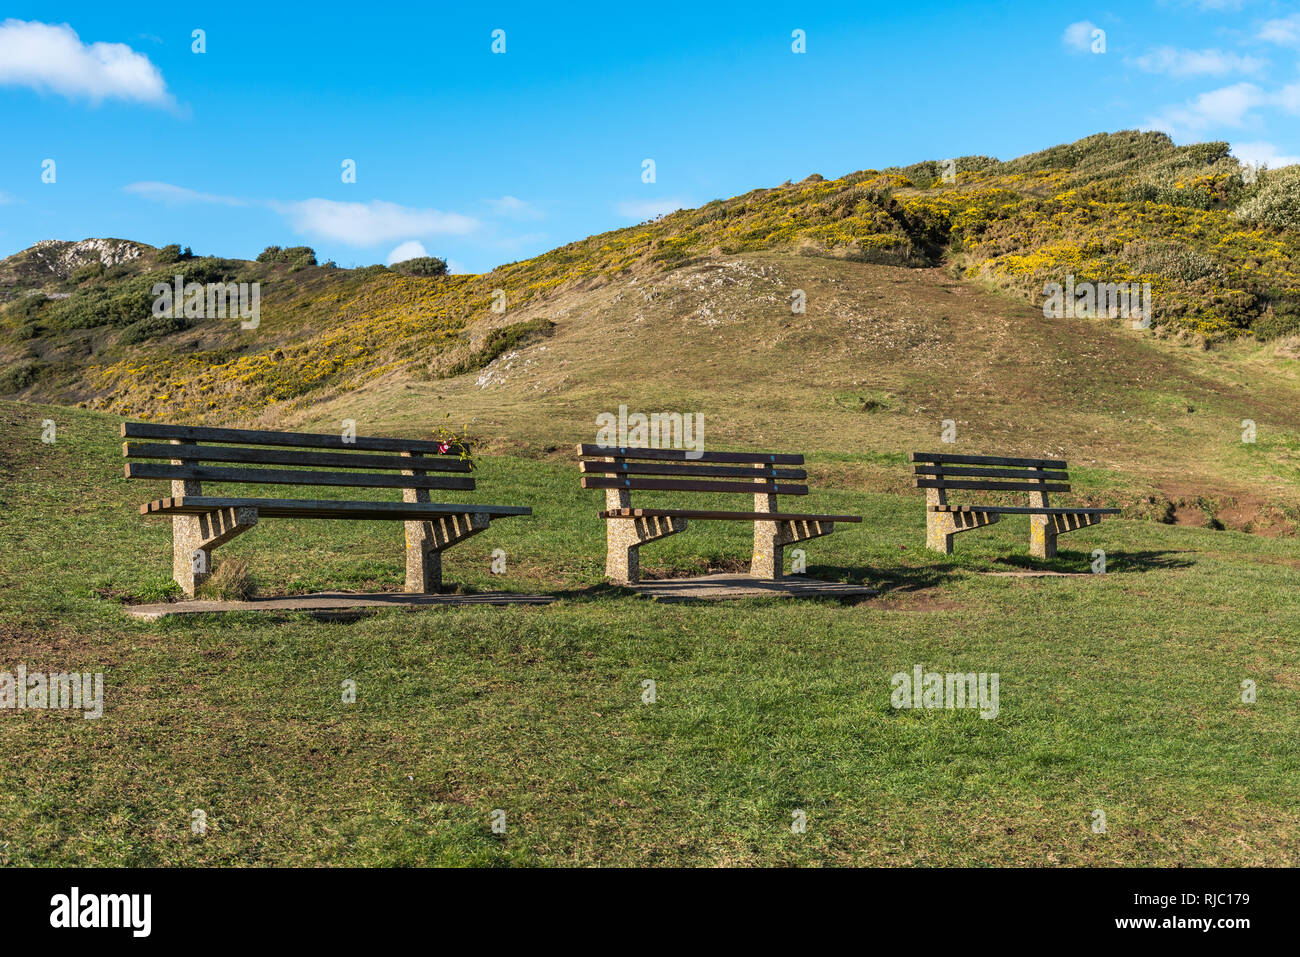 Drei leere Holzbänken in einer Reihe, in einer Landschaft von Hügeln positioniert, mit gelben Blumen. Blauer Himmel und Wolken hinter sich. Mit Platz für Text. Stockfoto